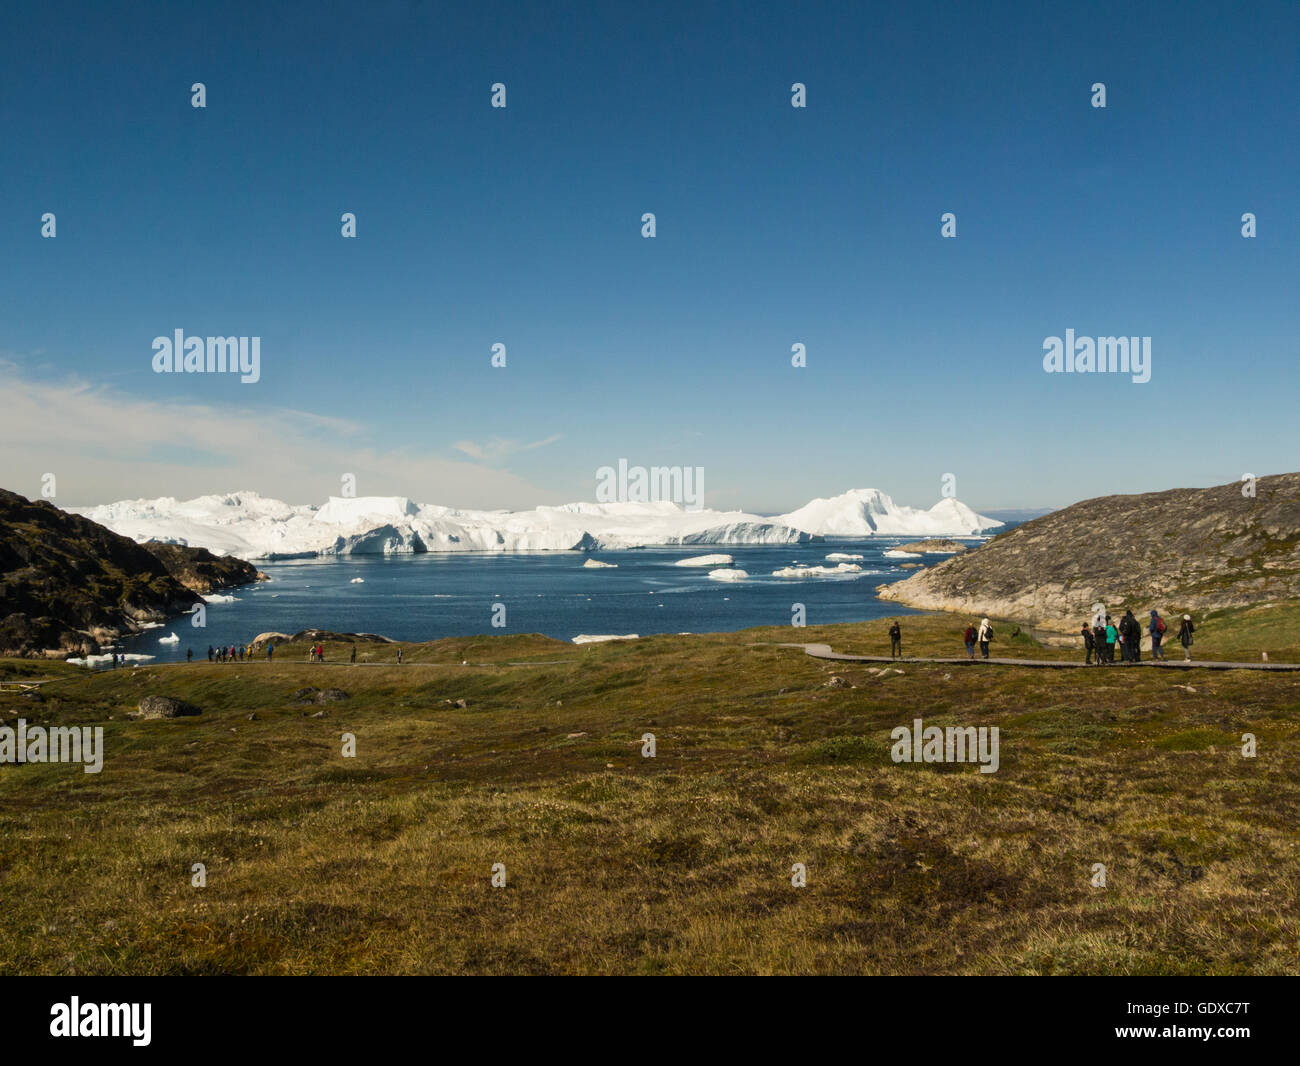 Alimentado por el fiordo helado de Ilulissat Sermeq Kujalleq glaciar Ilulissat es un pueblo en la municipalidad de Qaasuitsup, en Groenlandia occidental entrañable julio días de verano Foto de stock